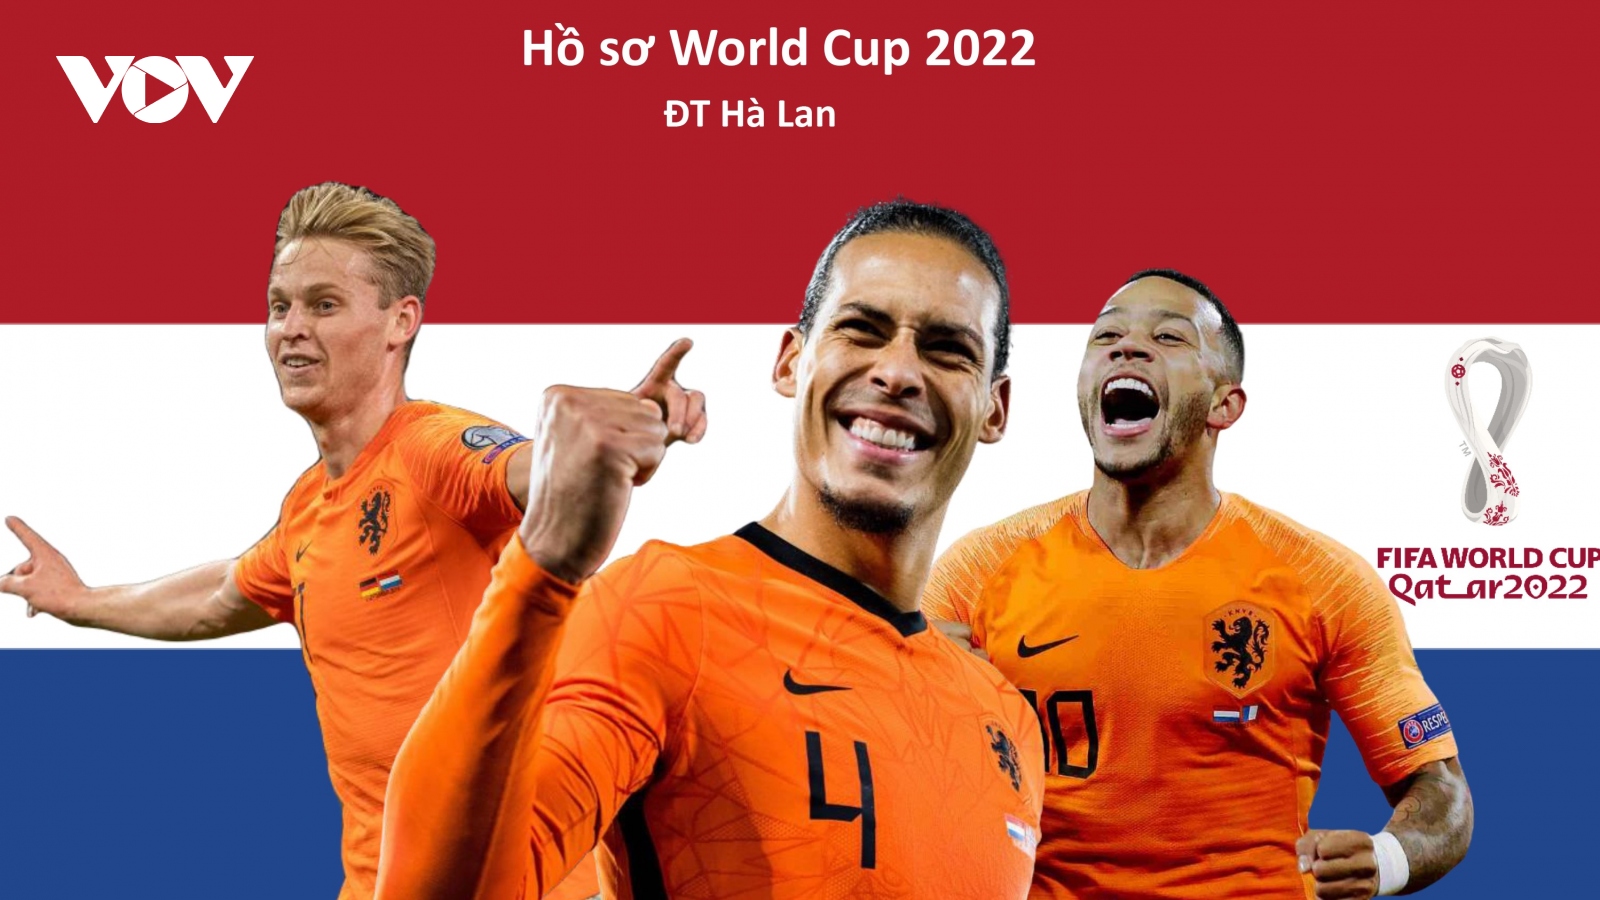 Hồ sơ các ĐT dự VCK World Cup 2022: Đội tuyển Hà Lan 